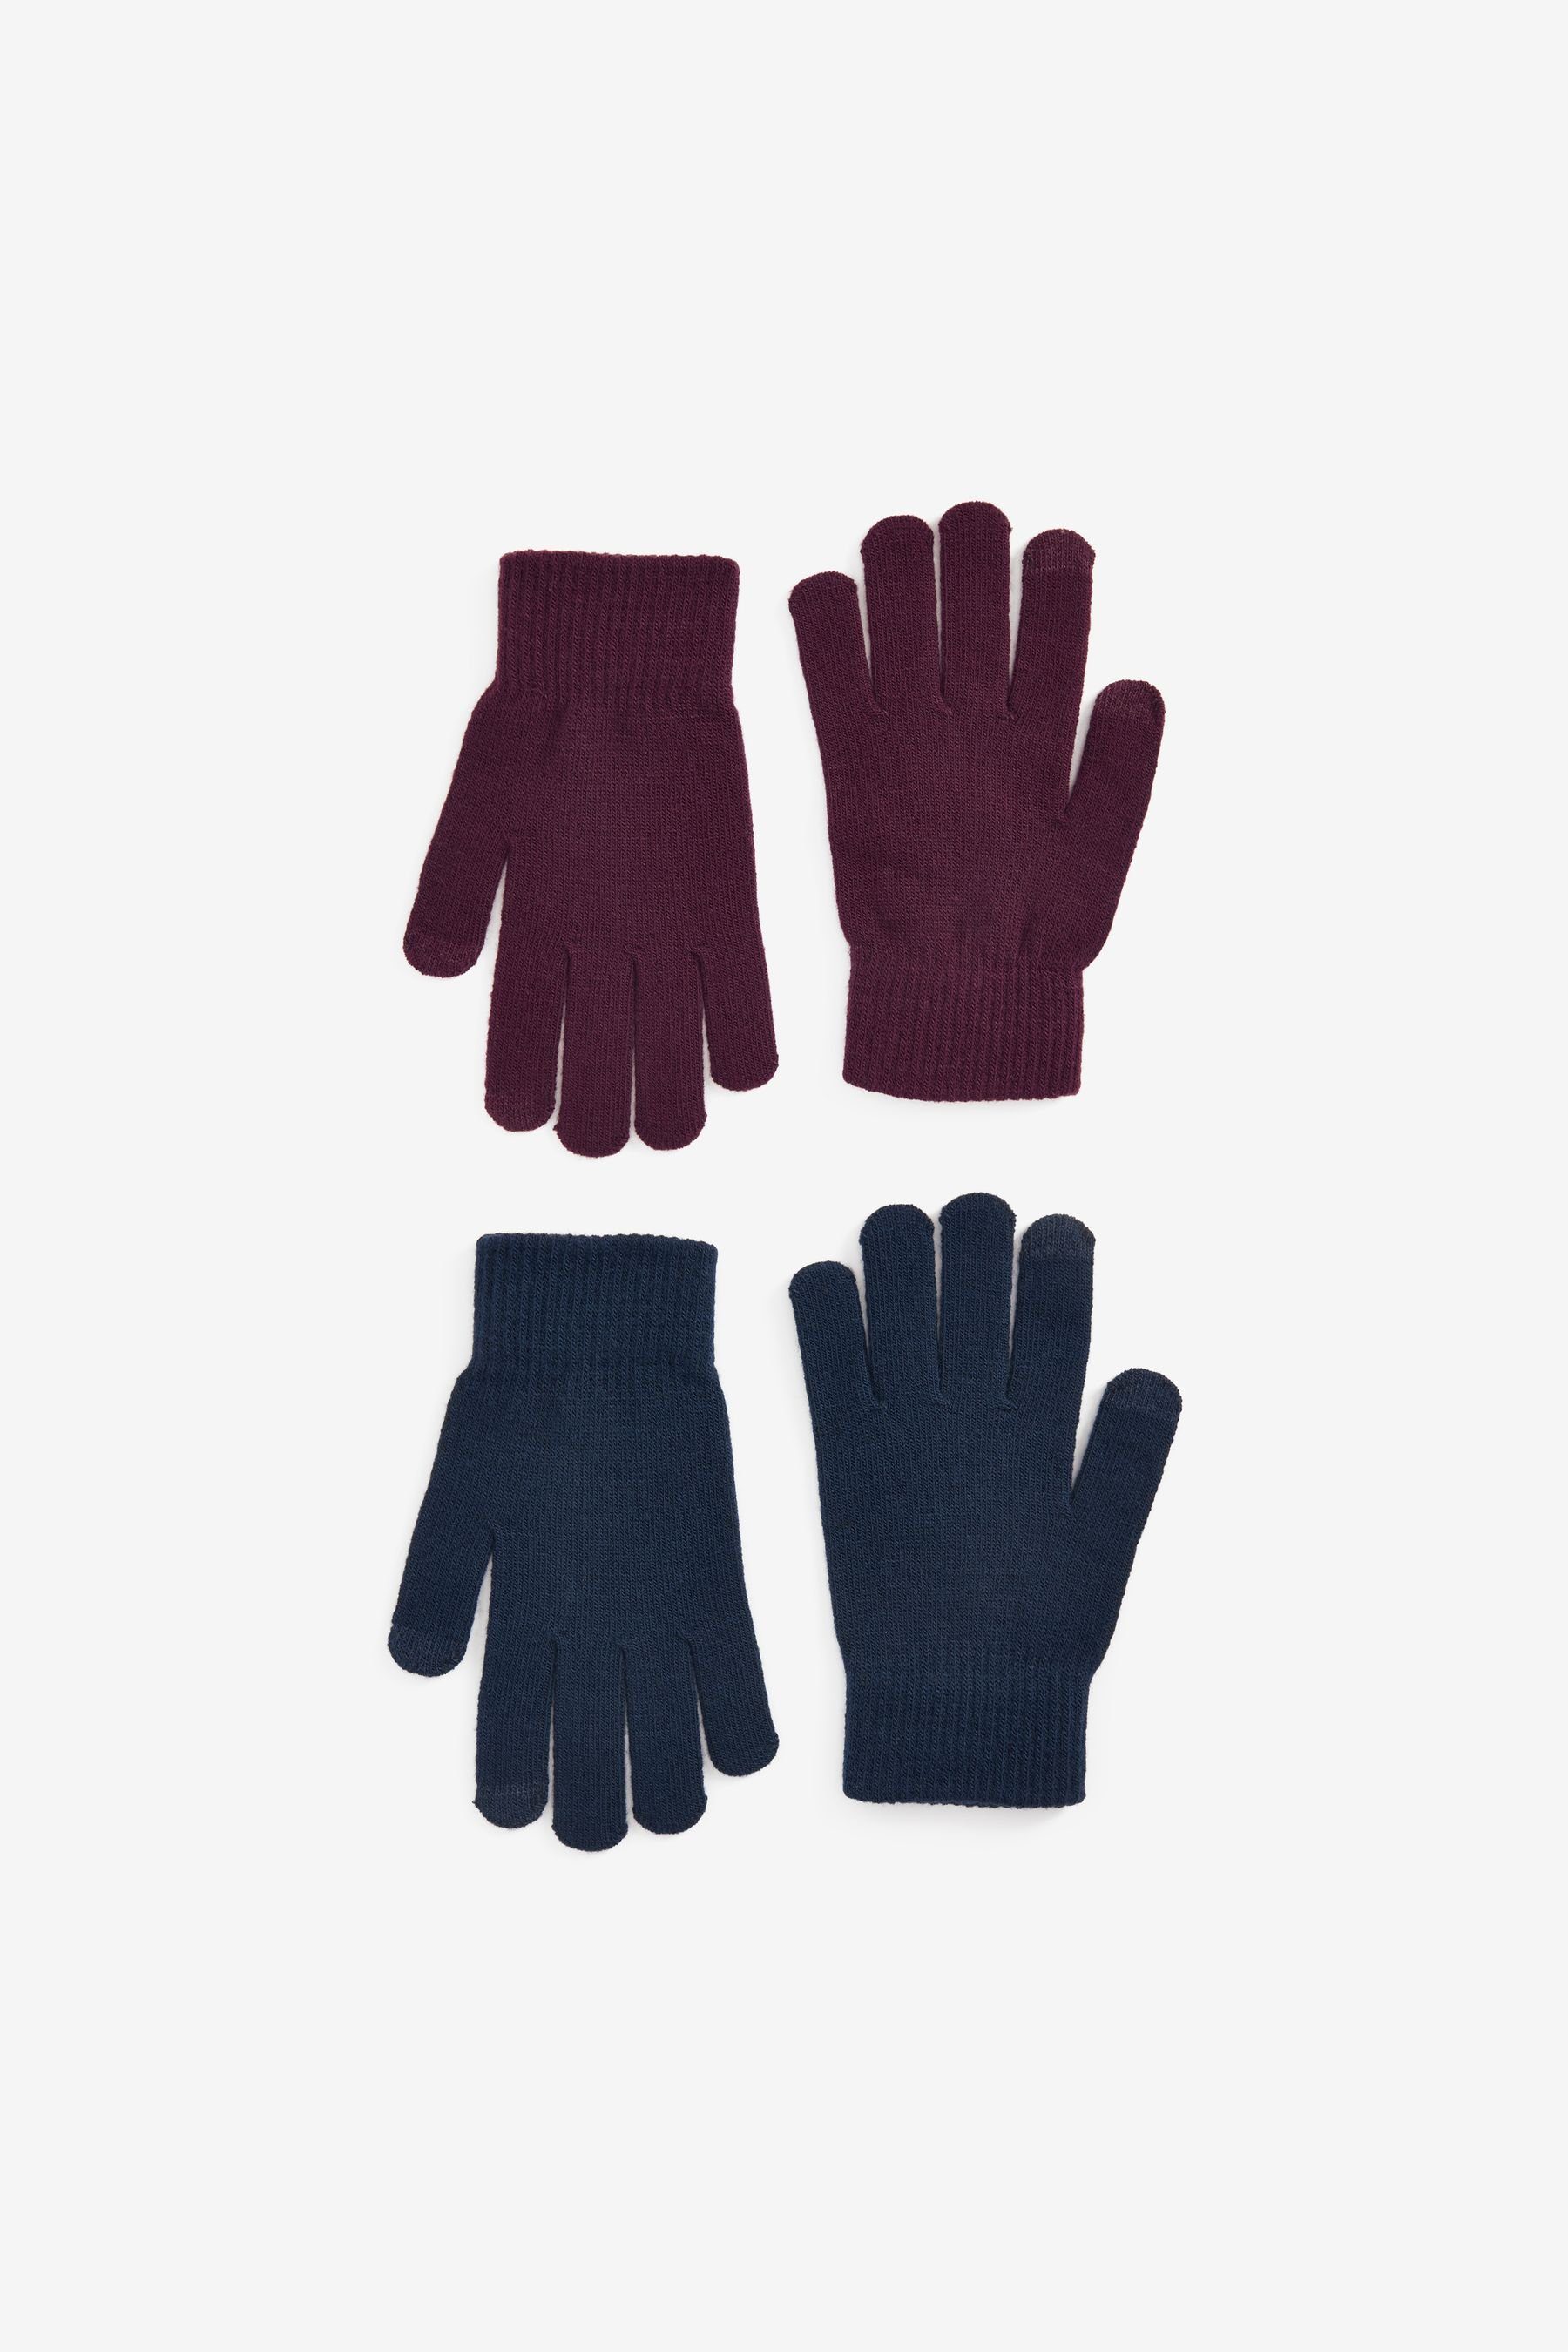 Next Strickhandschuhe Magic Touchscreen-Handschuhe, Navy/Red 2er-Pack